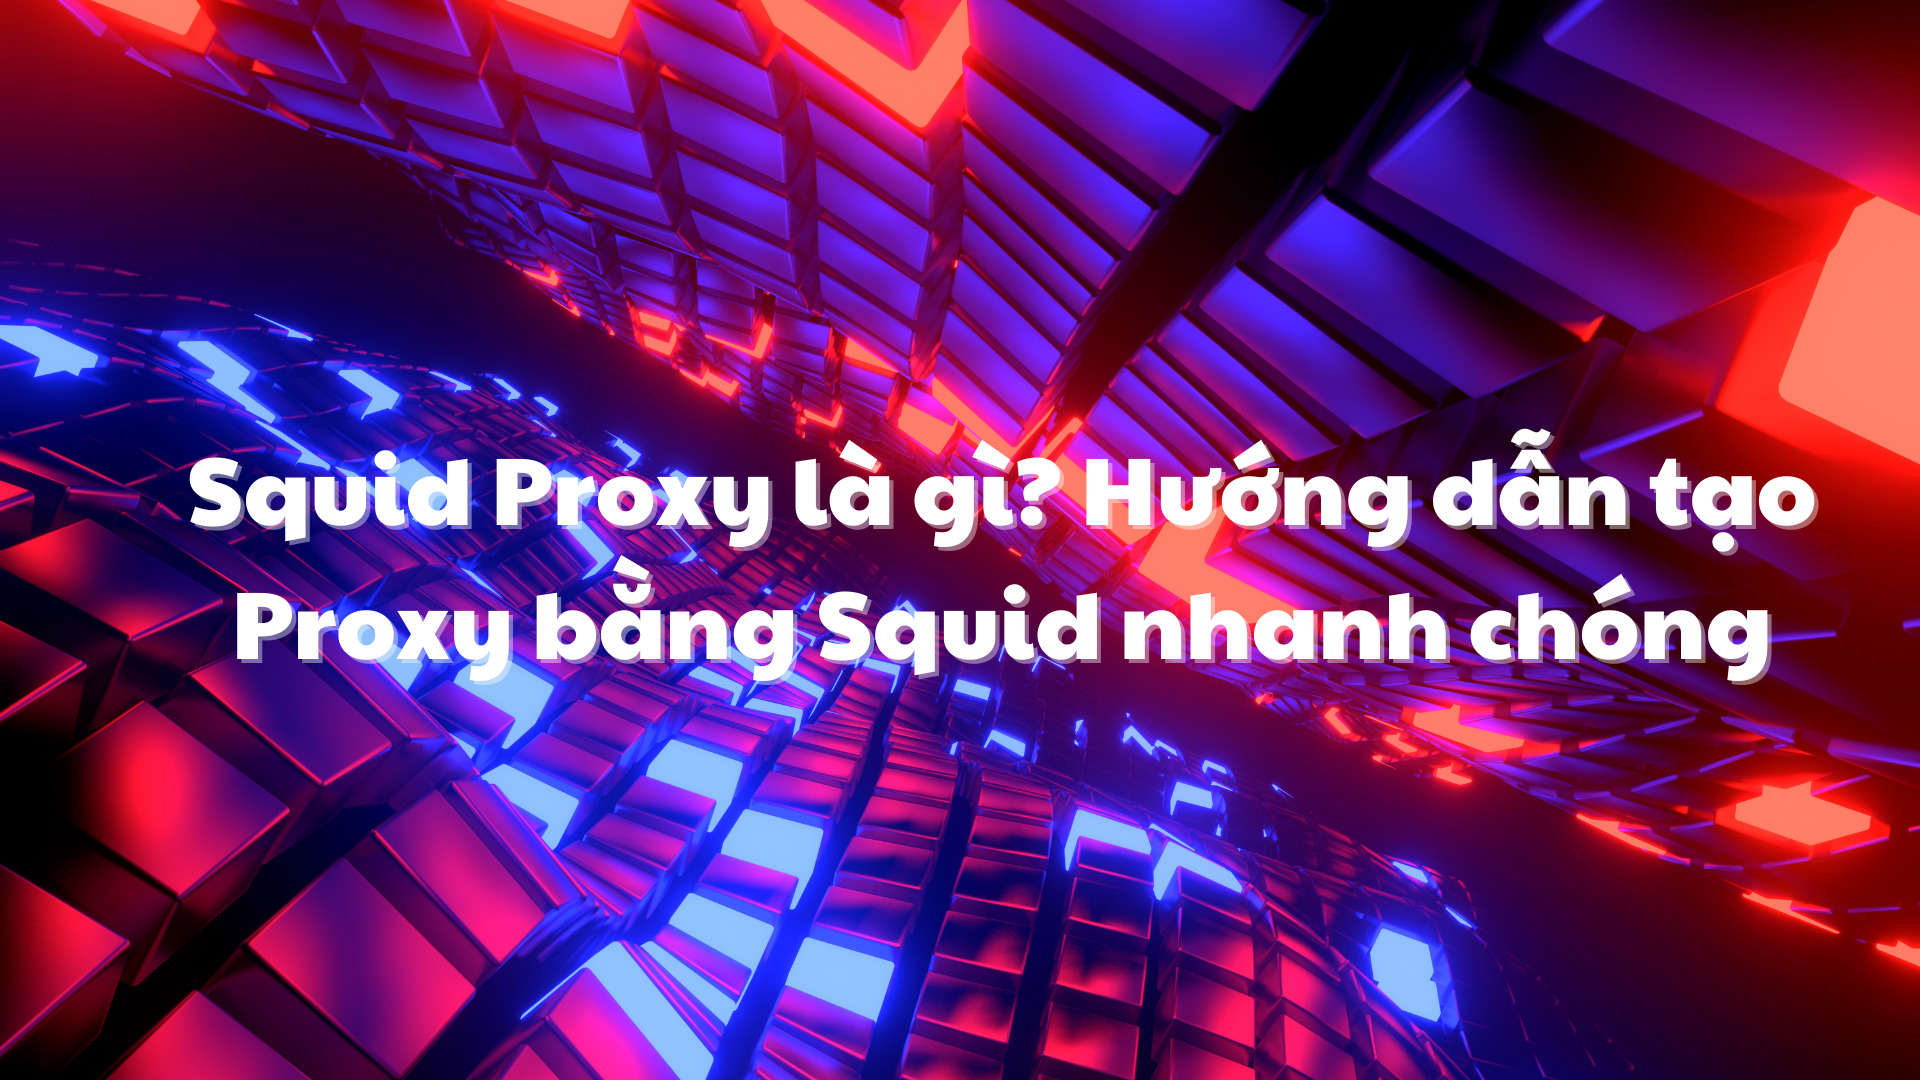 Squid Proxy là gì? Hướng dẫn tạo Proxy bằng Squid nhanh chóng